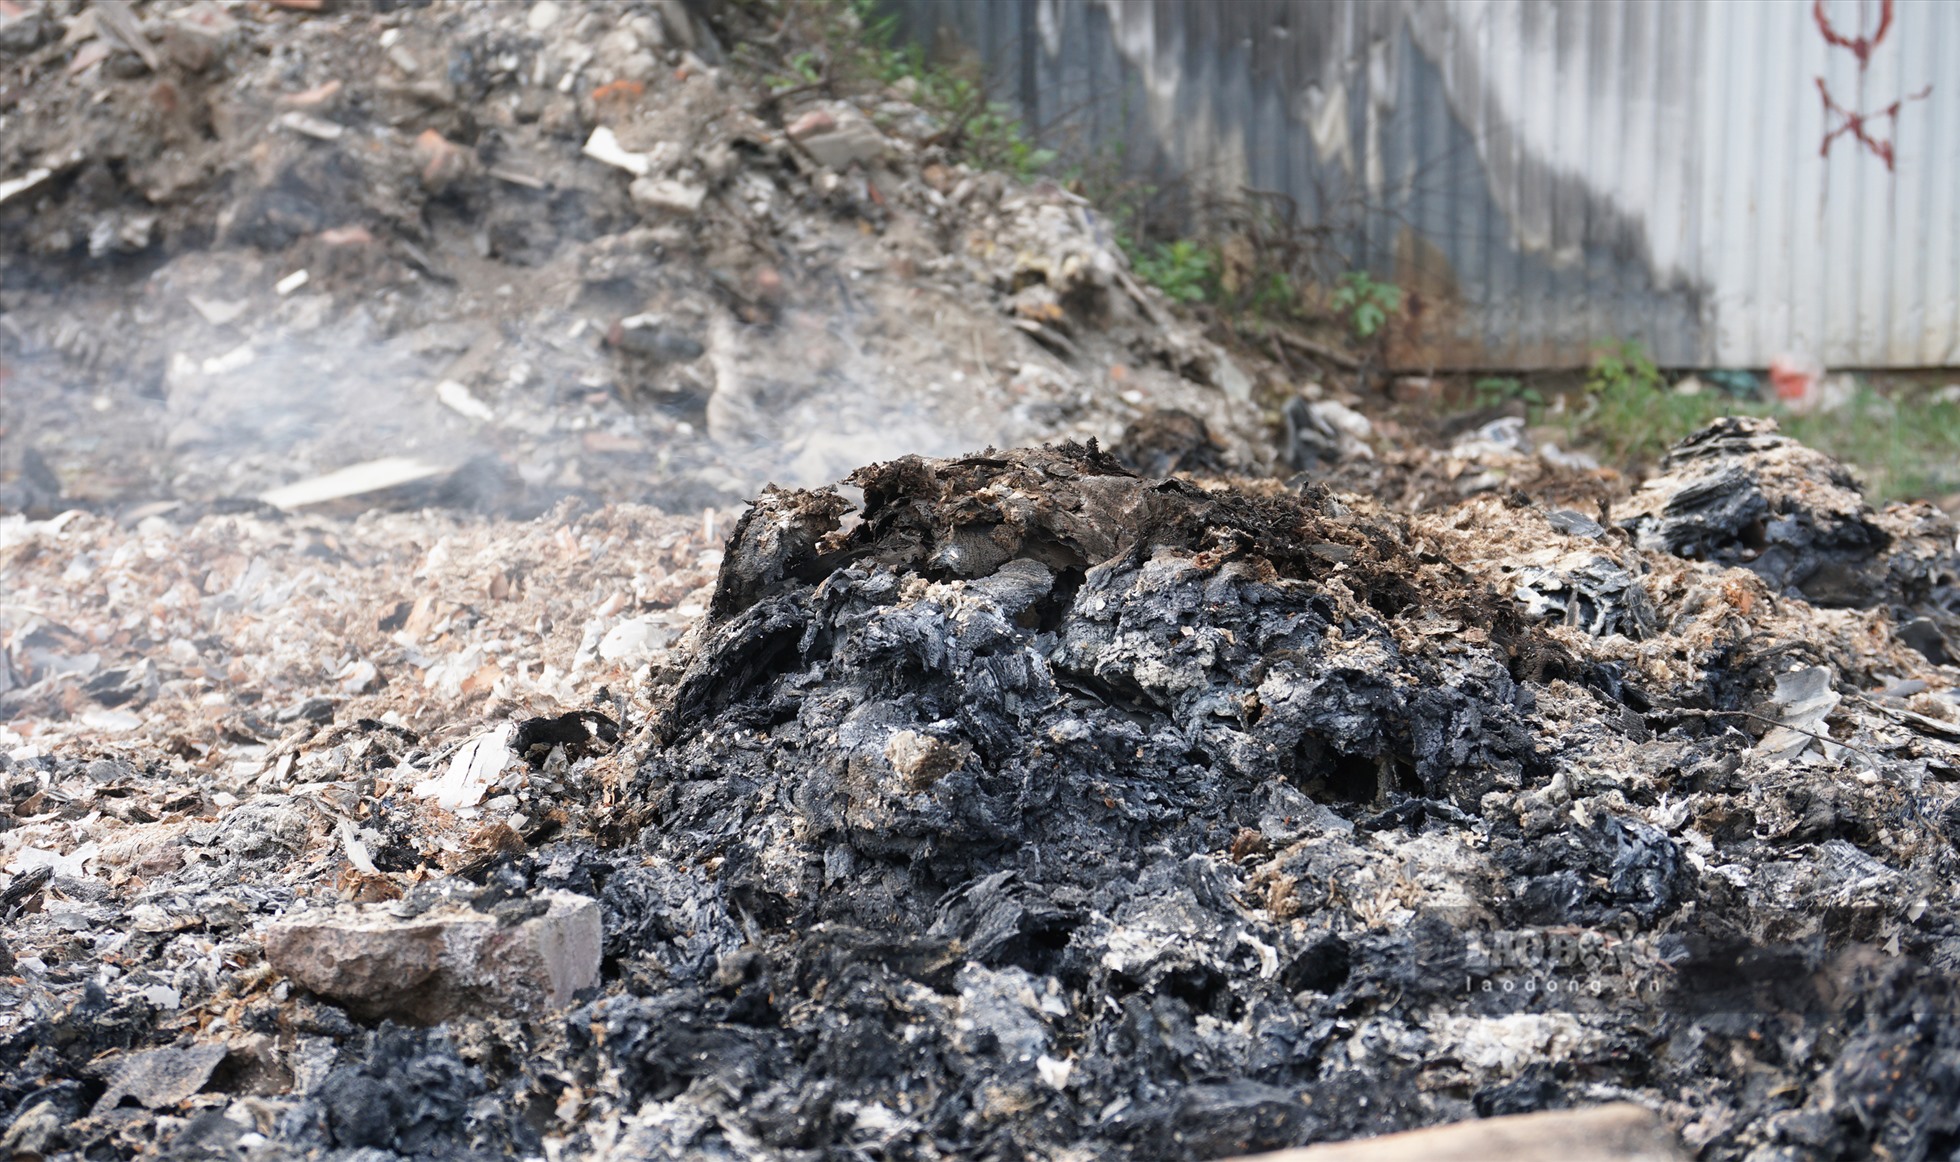 Tình trạng đốt rác cũng diễn ra ở đây khiến cho cuộc sống của người dân xung quanh bị ảnh hưởng.